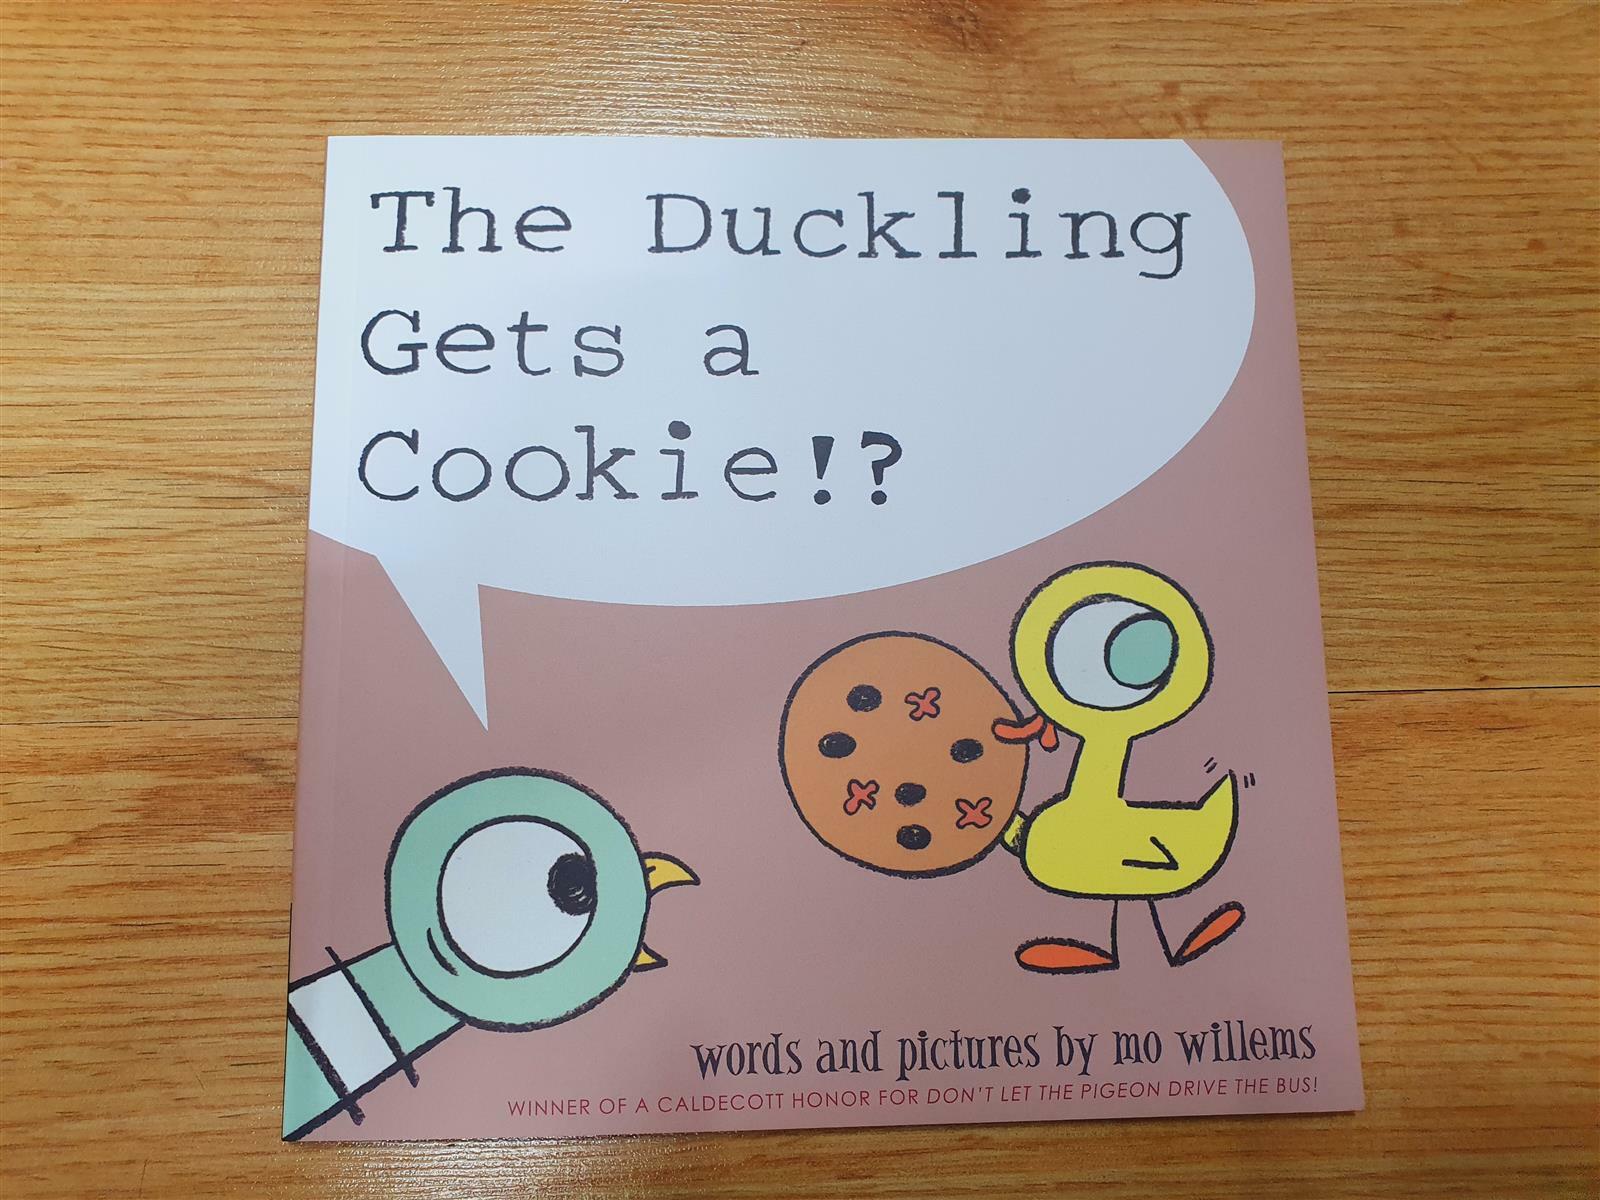 [중고] The Duckling Gets a Cookie!? (Paperback)